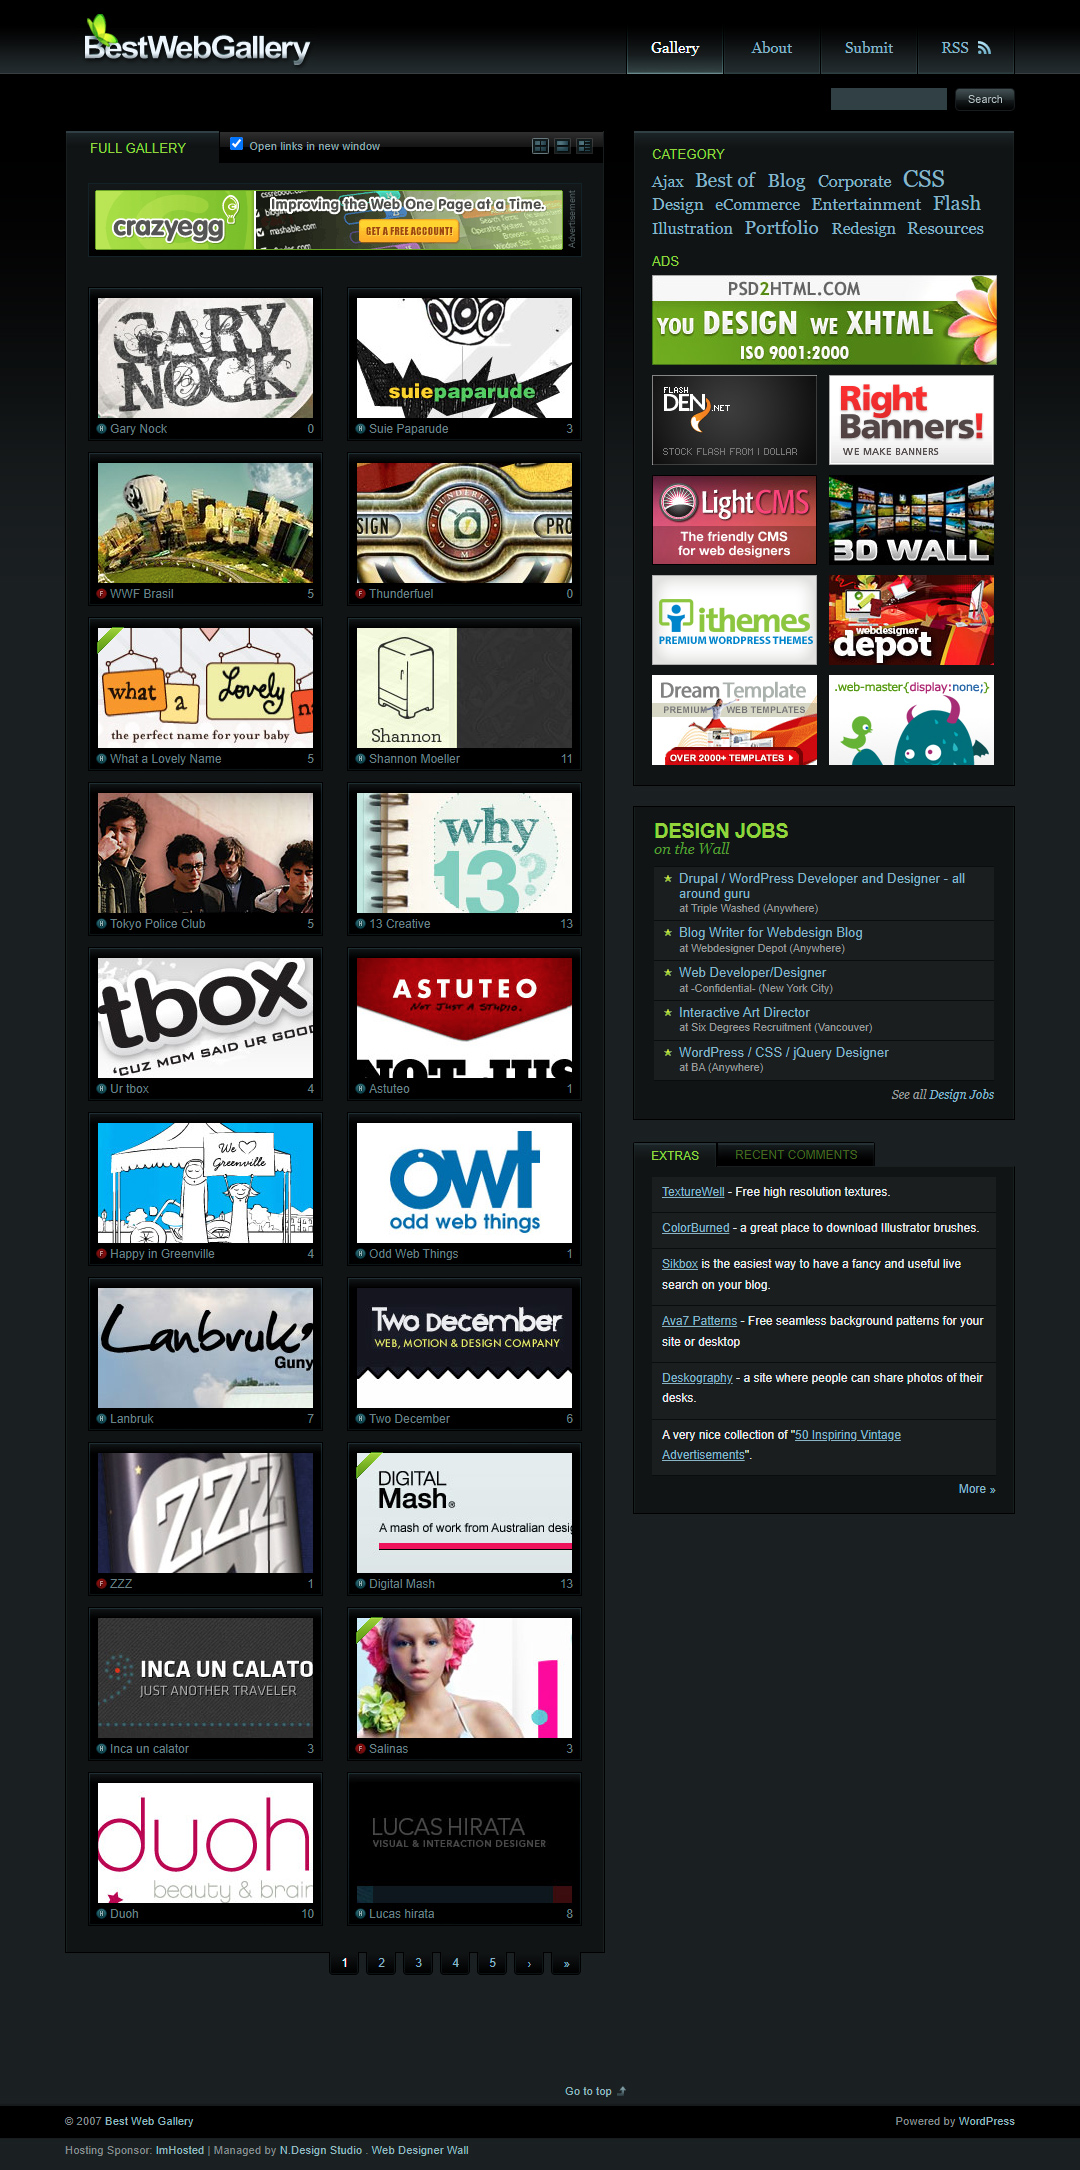 Best Web Gallery website in 2008